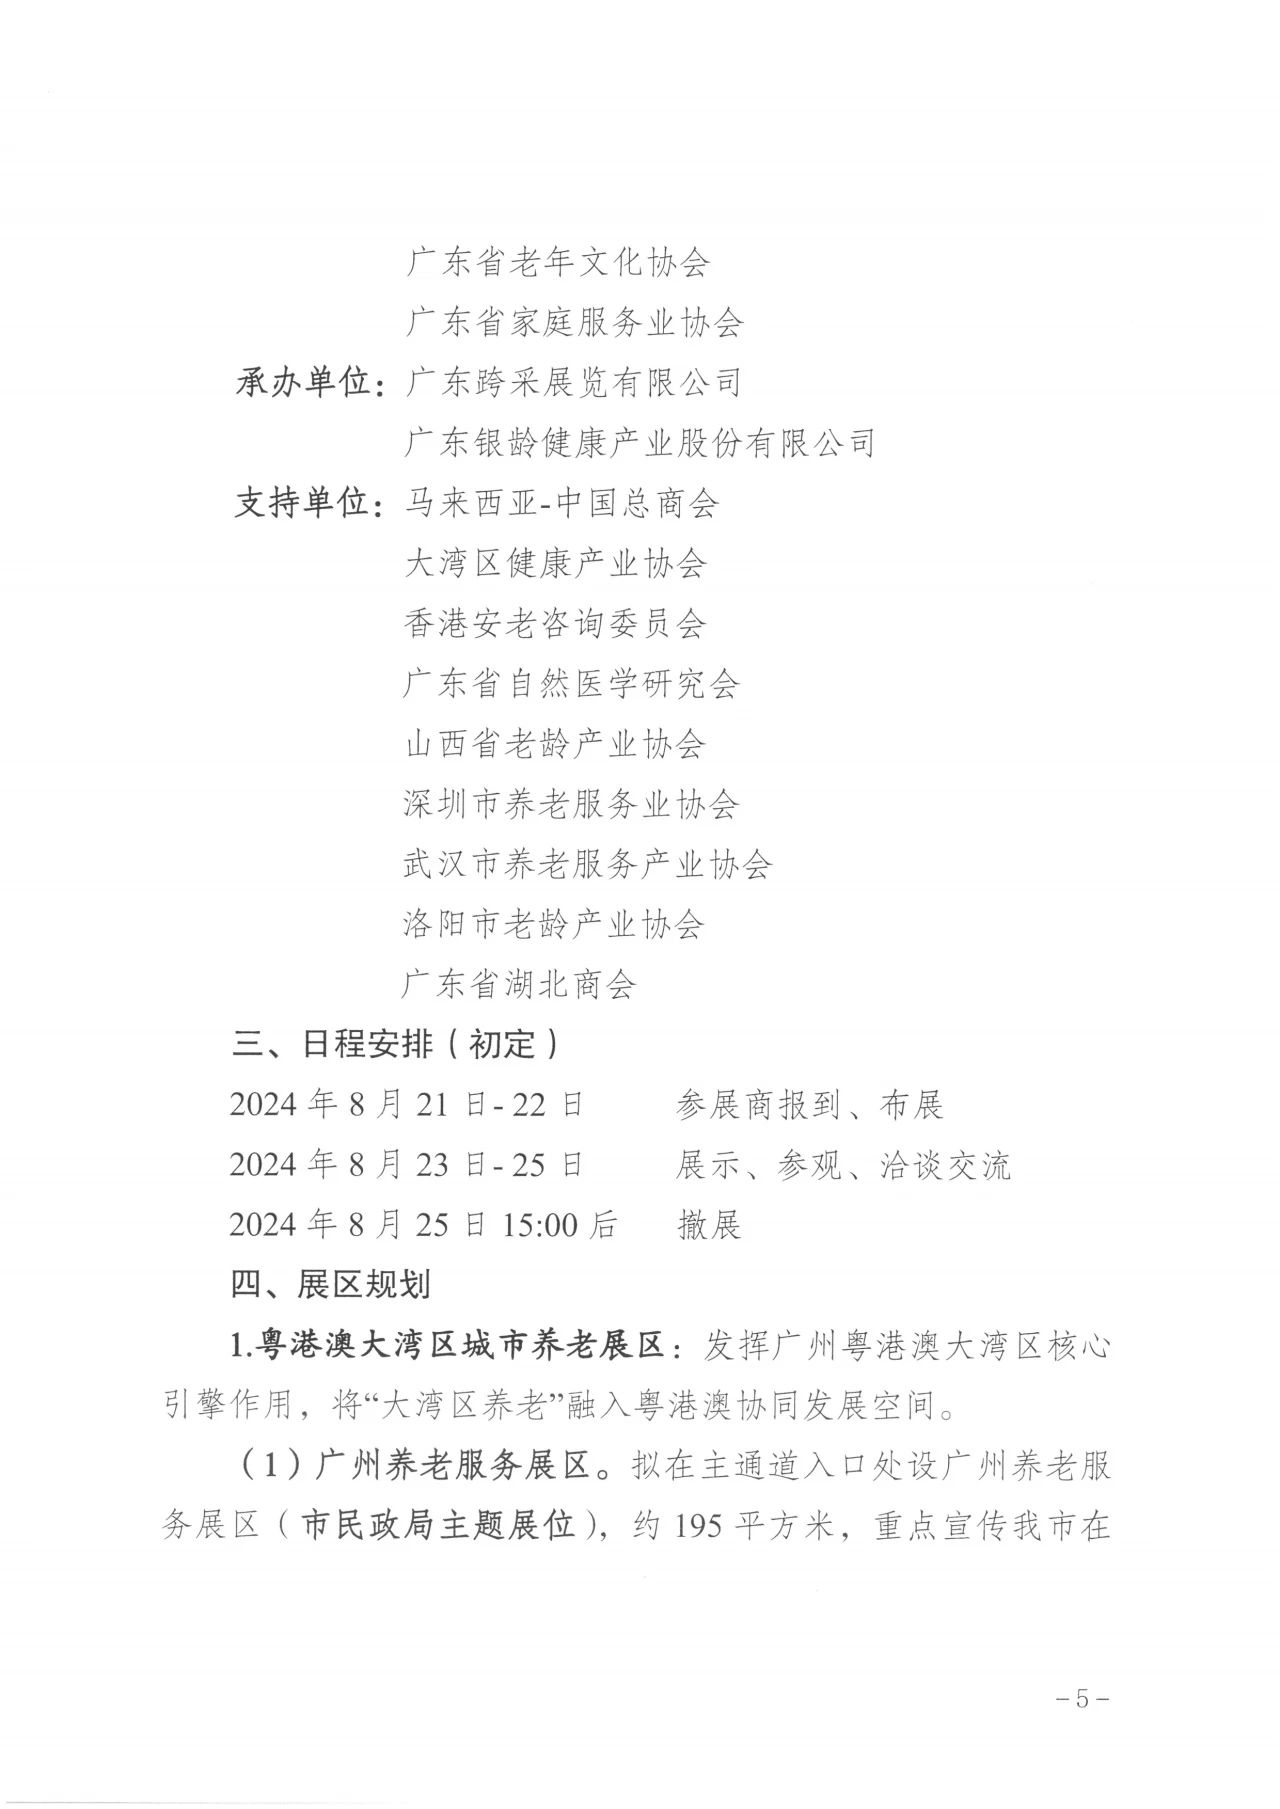 通知  广州市民政局关于邀请组织参加第八届广州老博会的函5.jpg